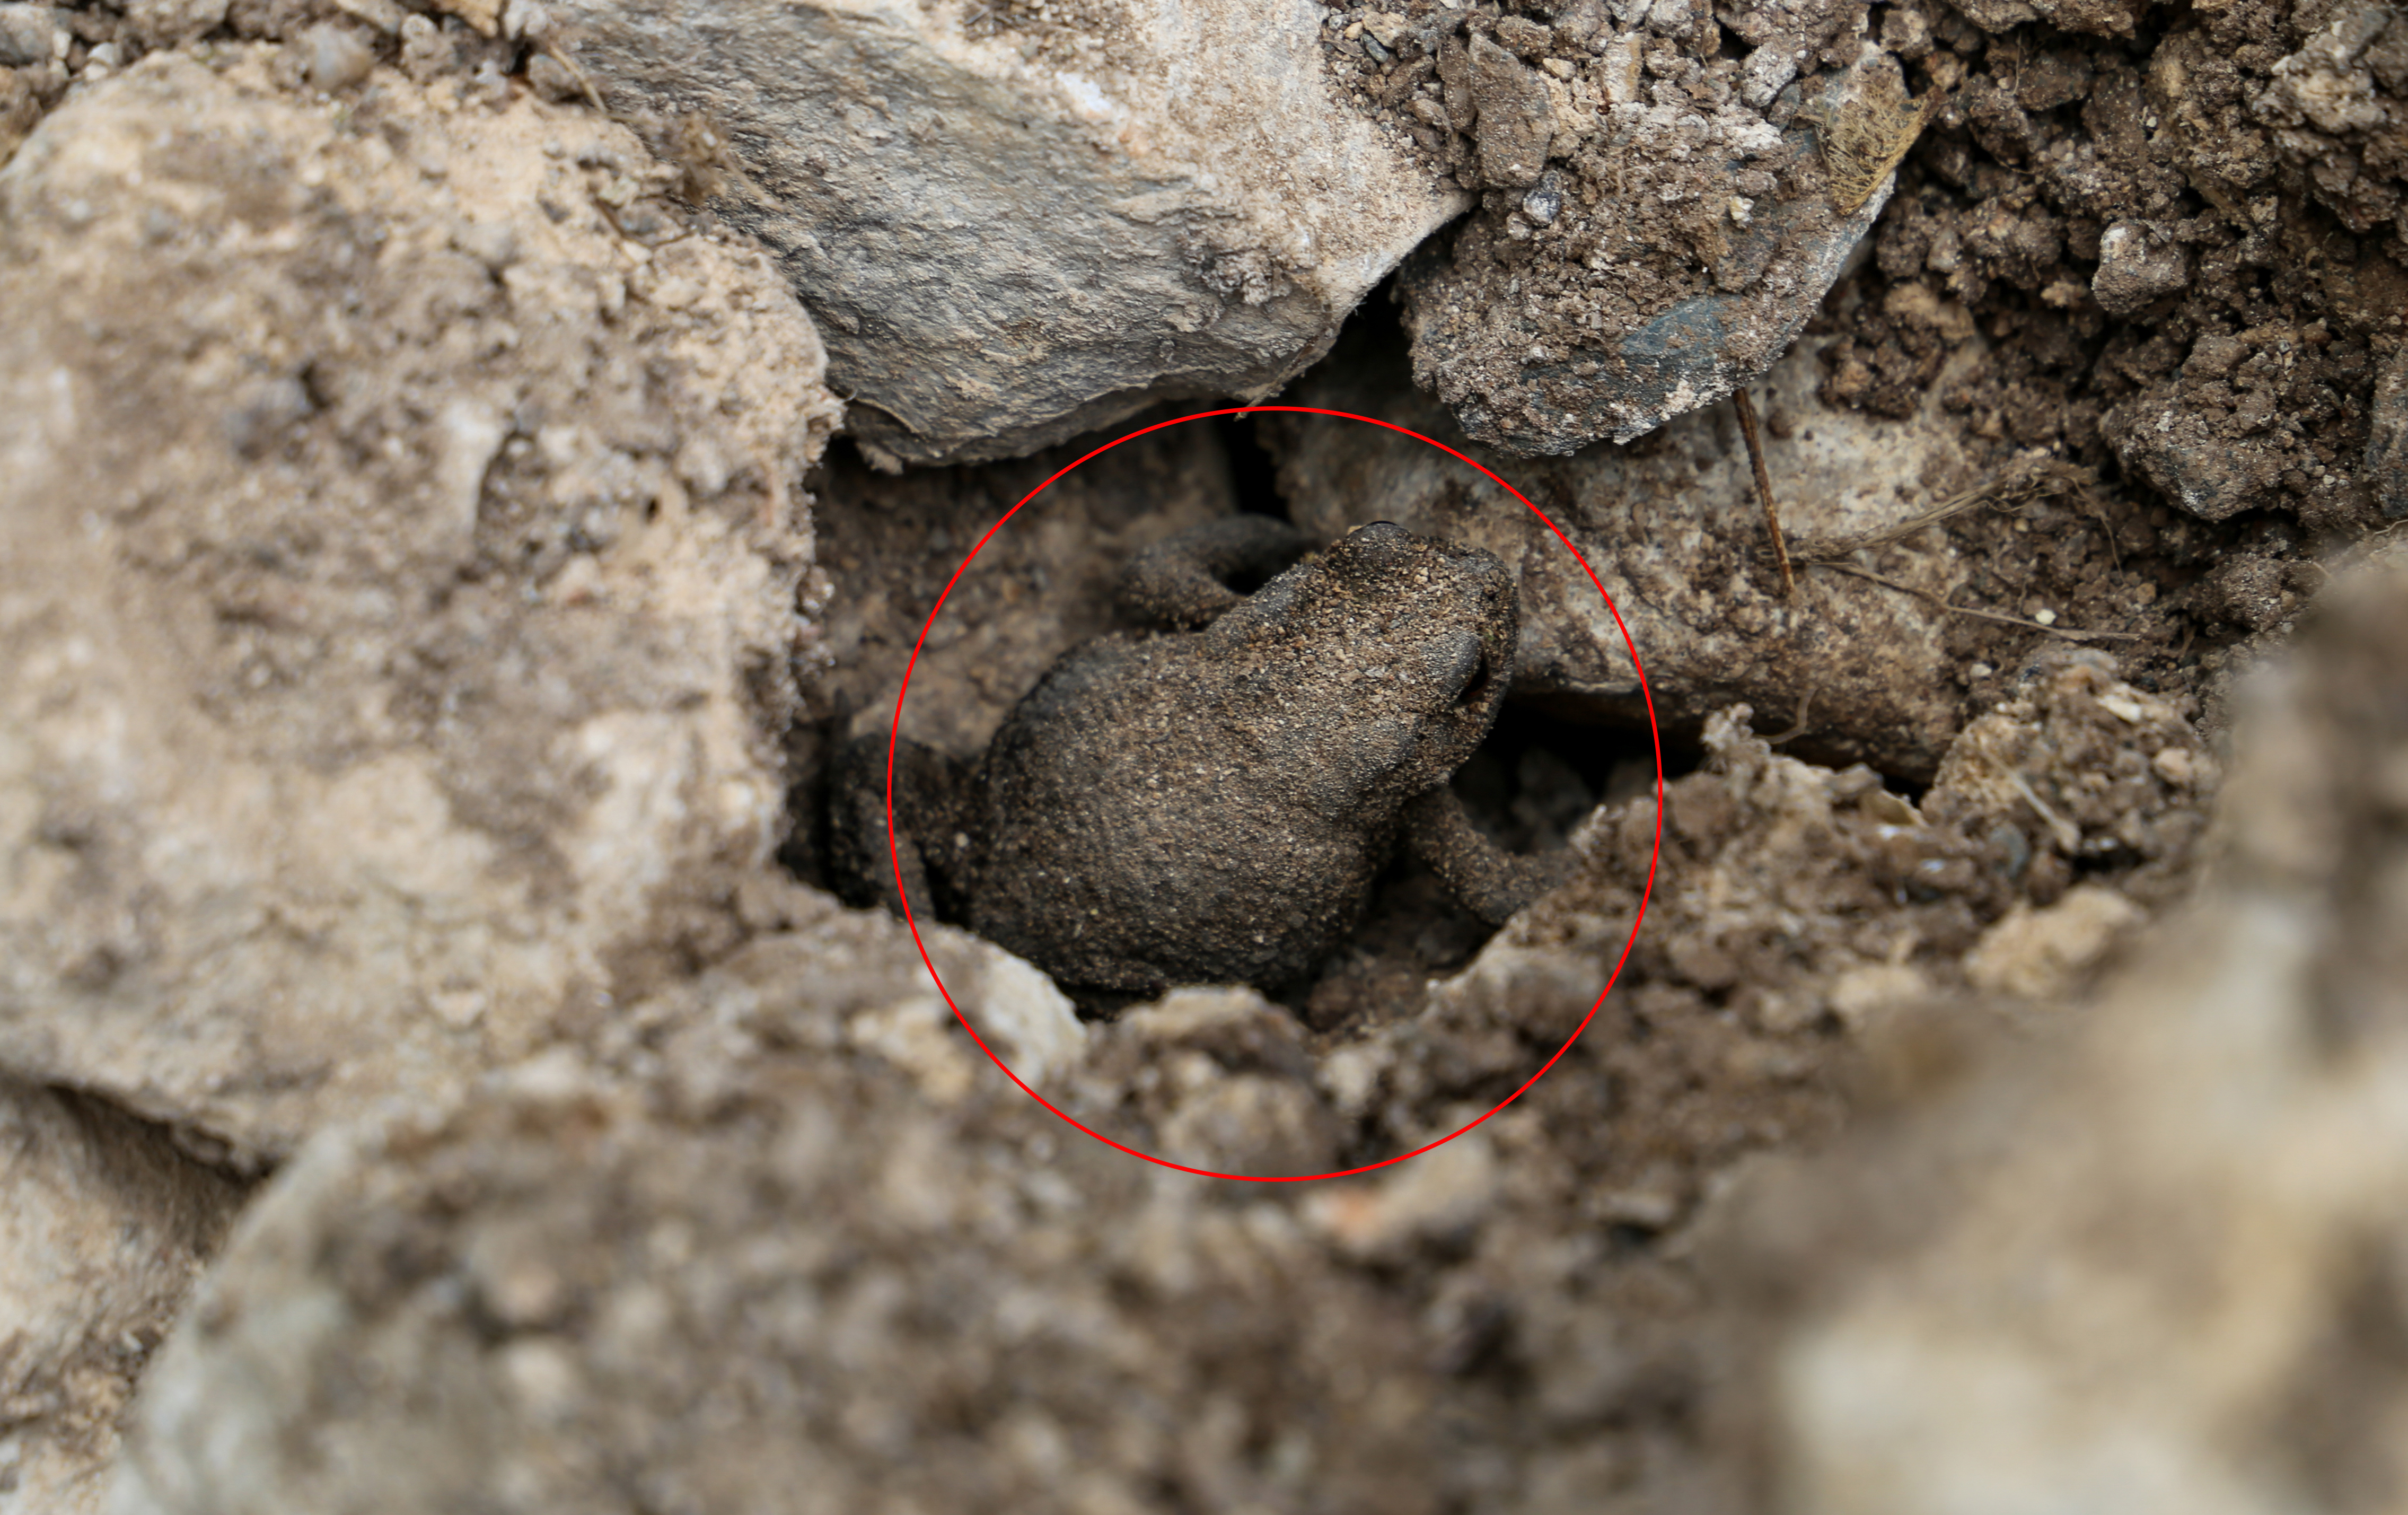 In der Mitte eines Kalksteinhaufens kann man eine Kröte entdecken, die sich versteckt